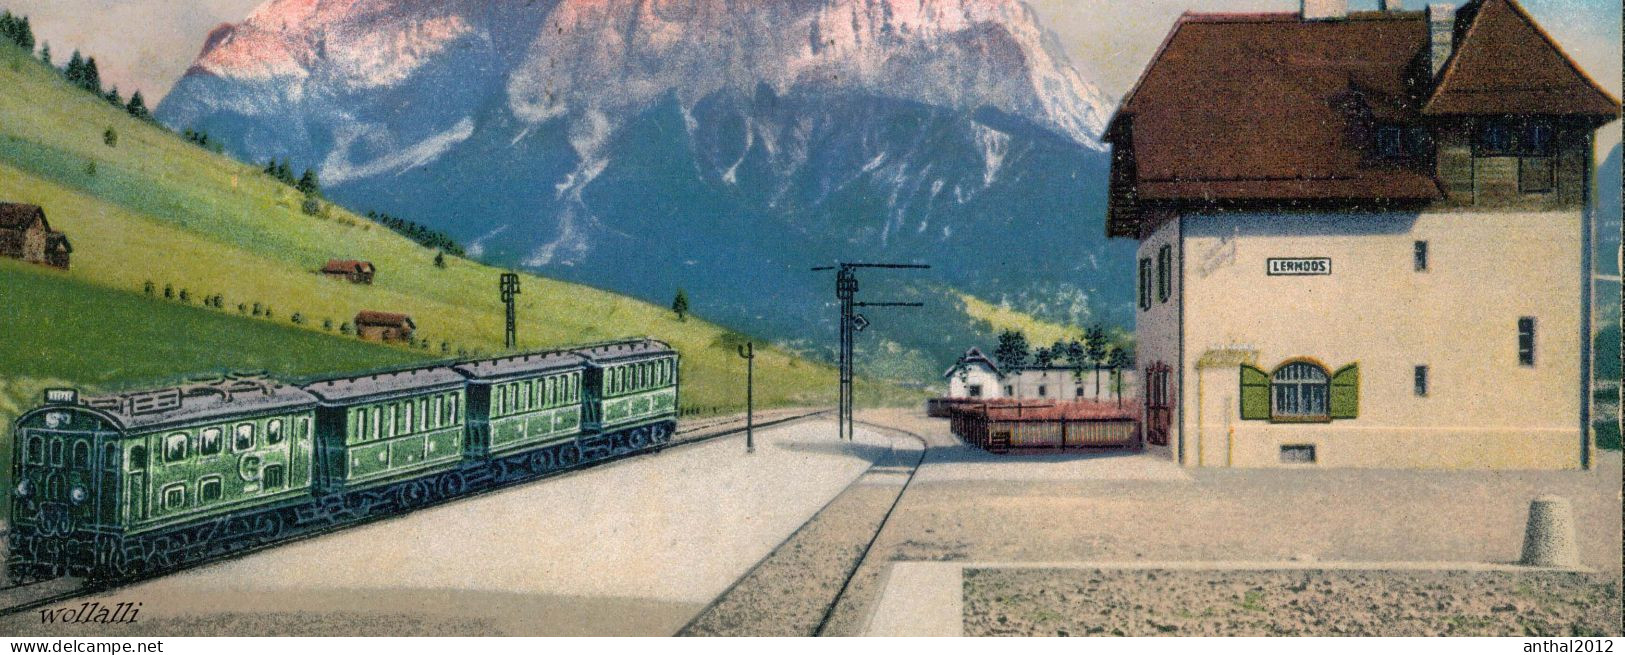 Superrar Bahnhof La Gare Lermoos Österreich Tirol Mit Zug 24.5.1921 Zugspitze - Stations With Trains